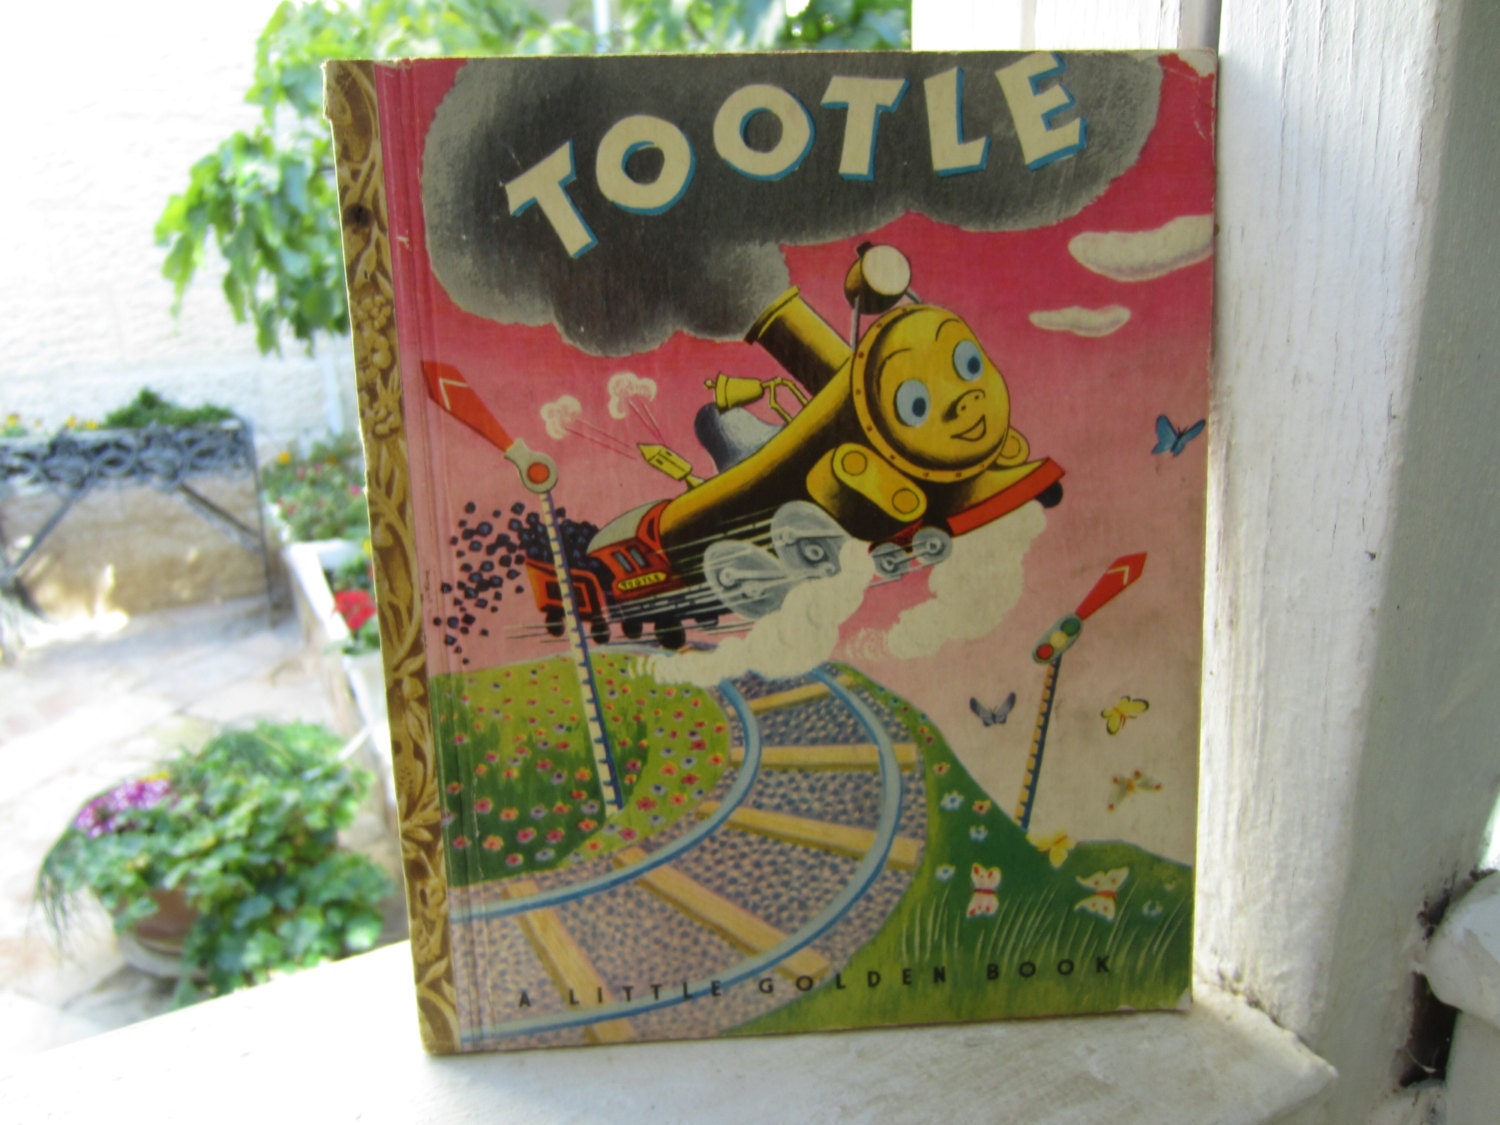 tootle little golden book 1945